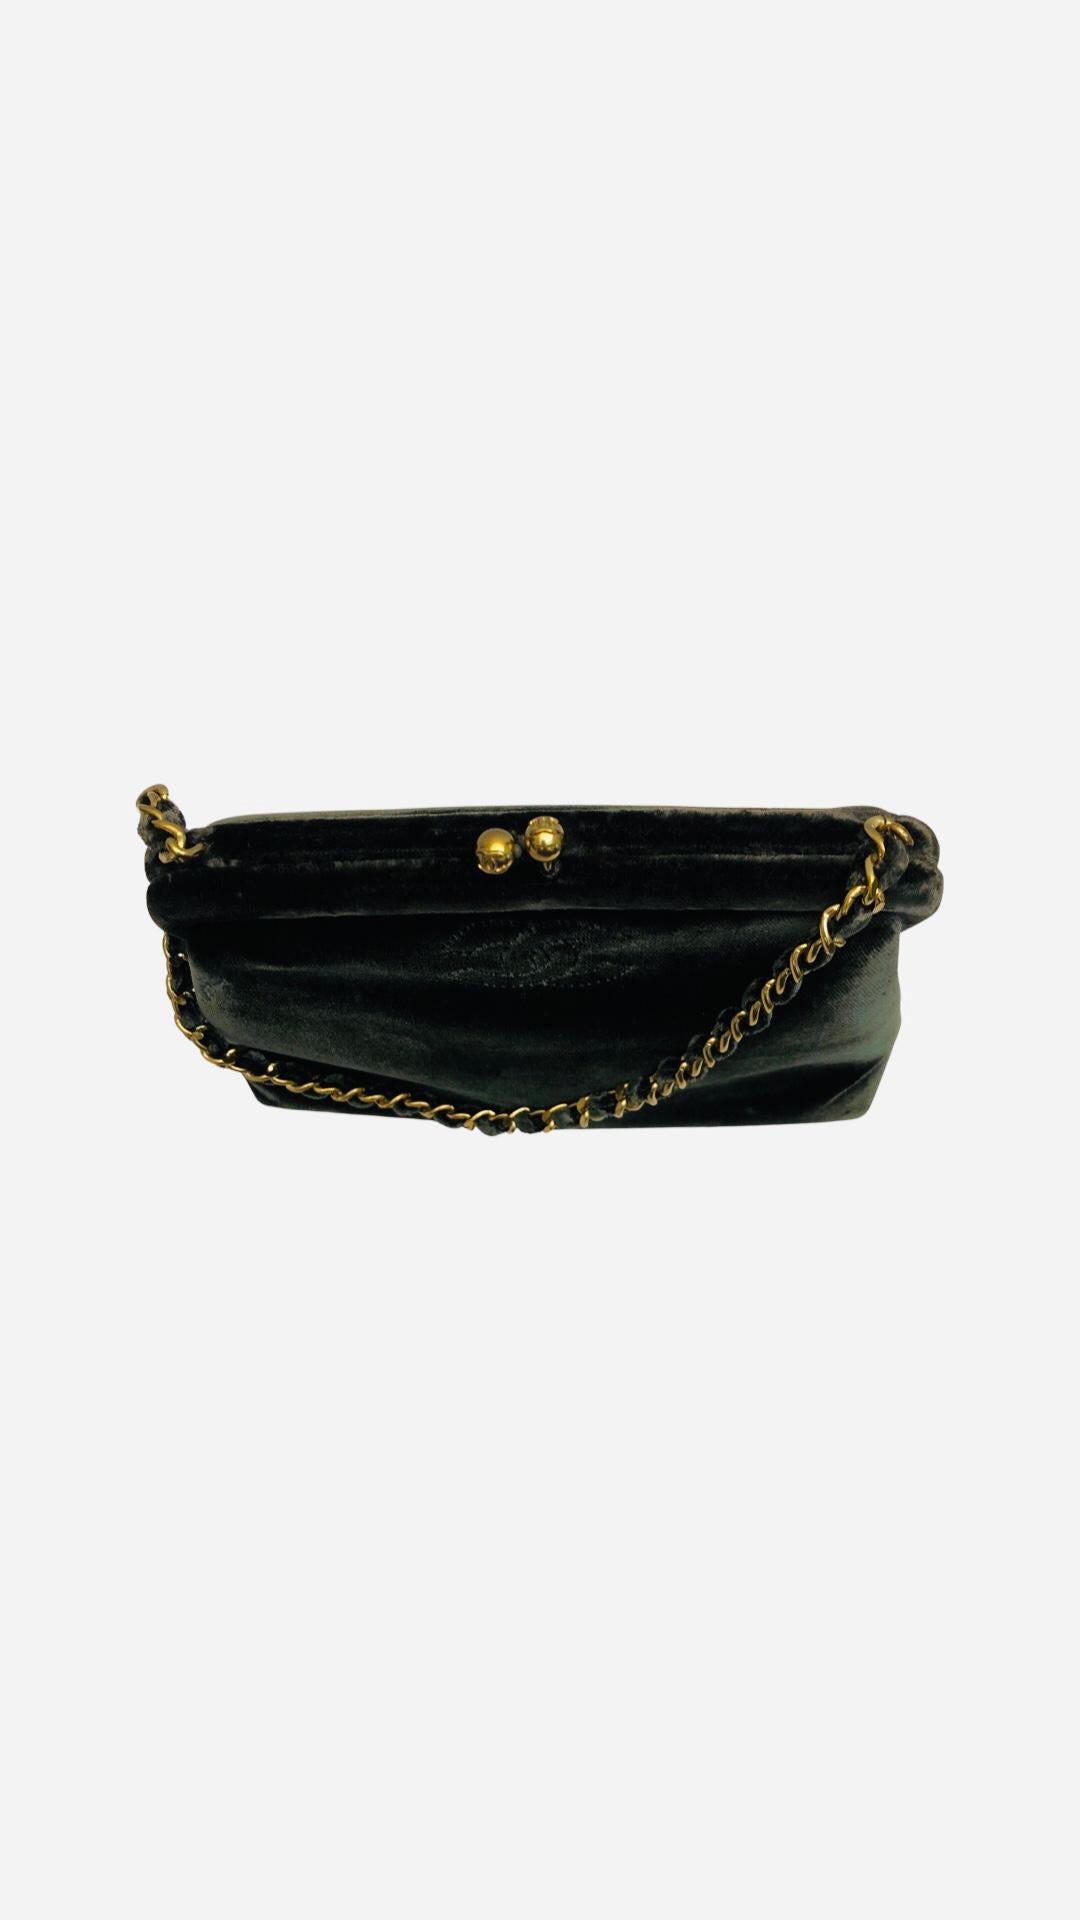 Women's or Men's Chanel Dark Green Velvet Purse Handbag For Sale